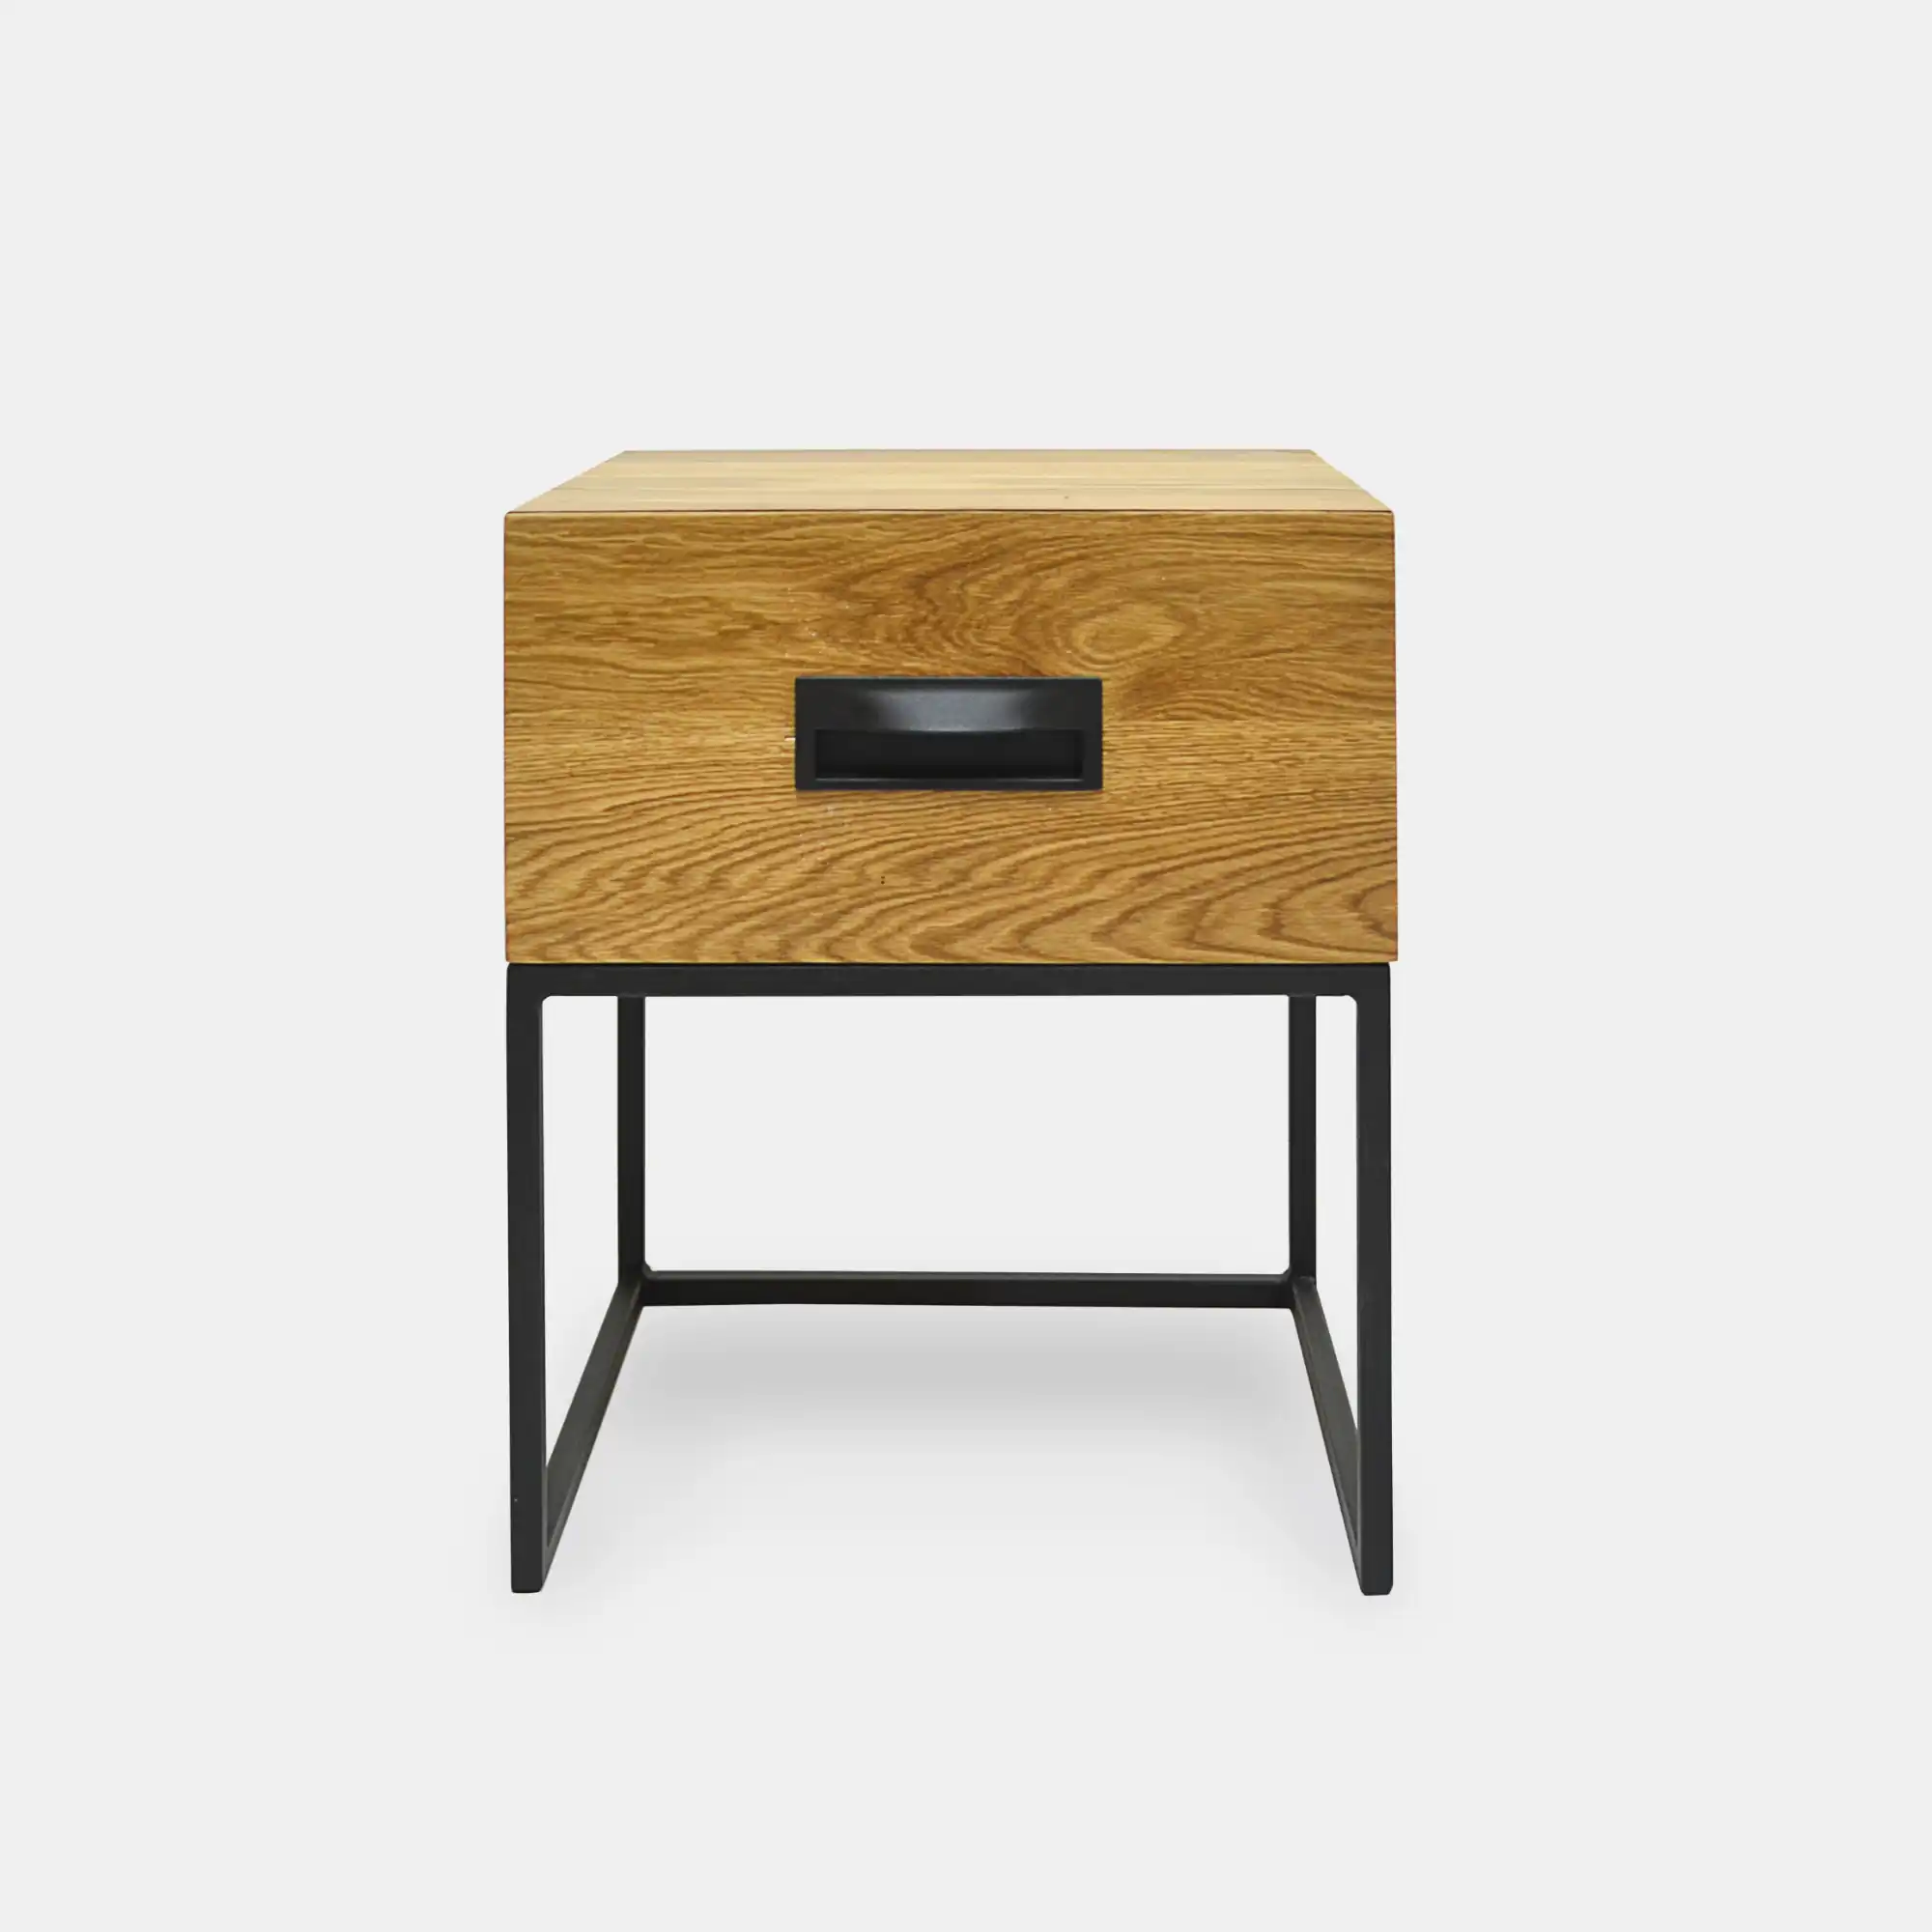 Oak bedside table with drawer WALT II